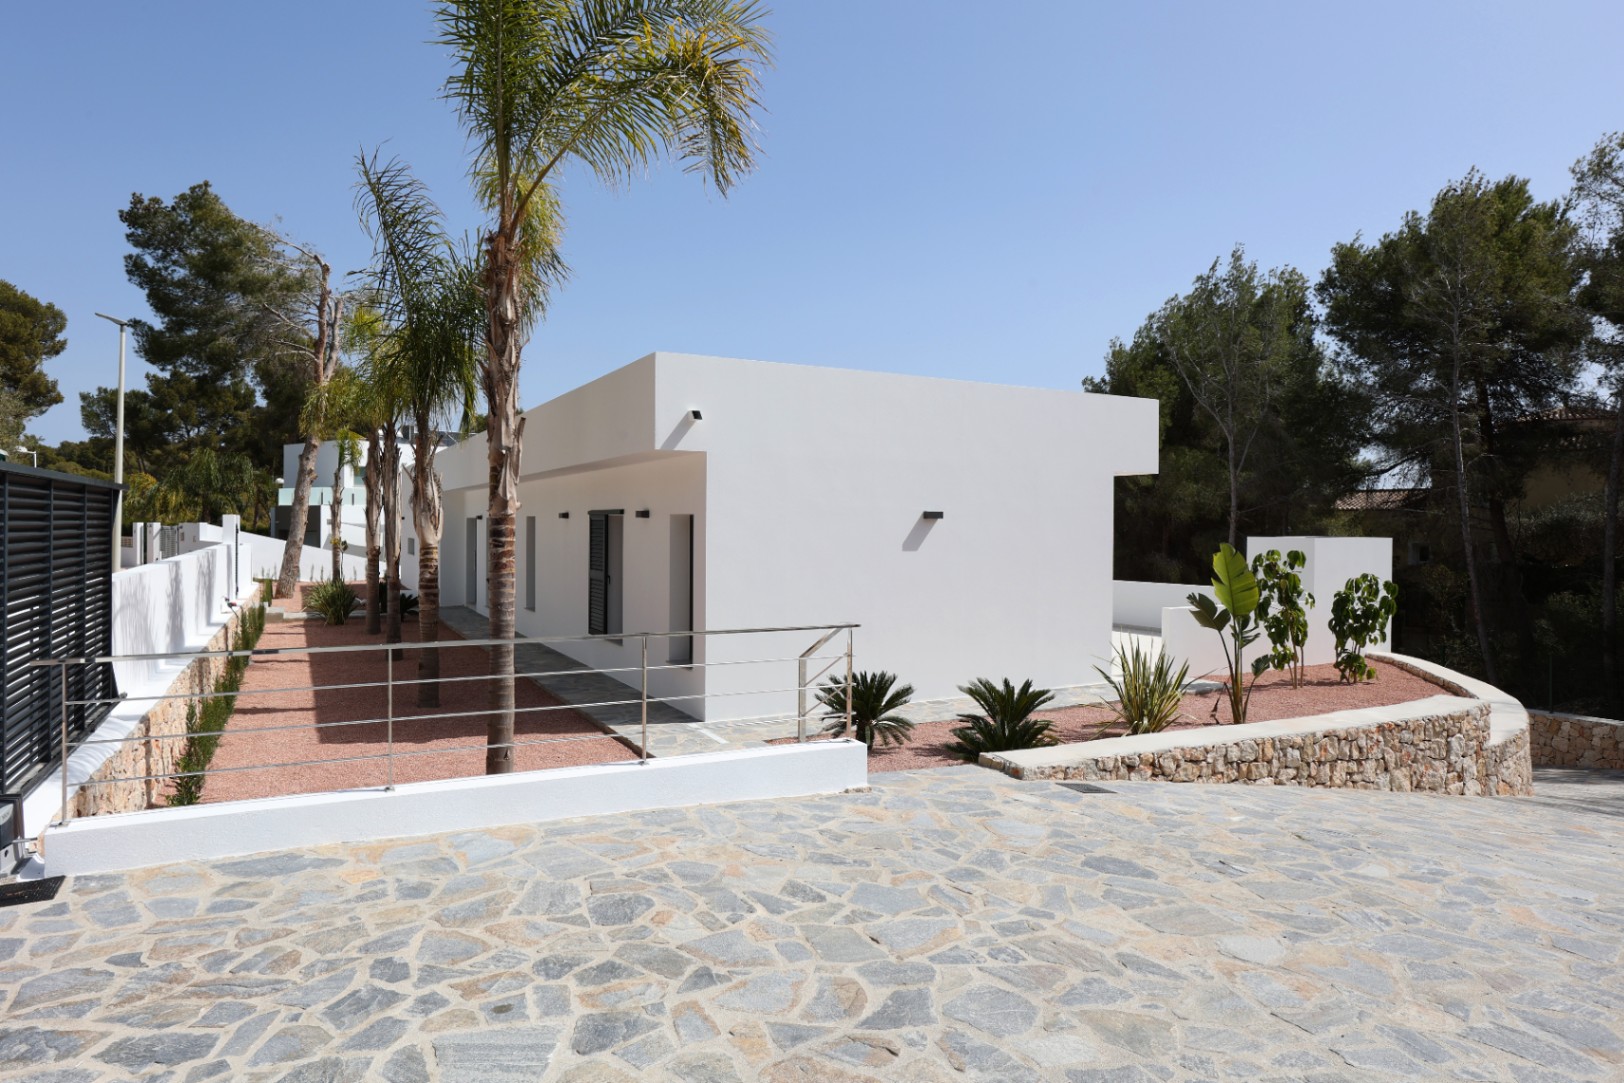 Descubre esta impresionante villa moderna recientemente terminada en Benissa